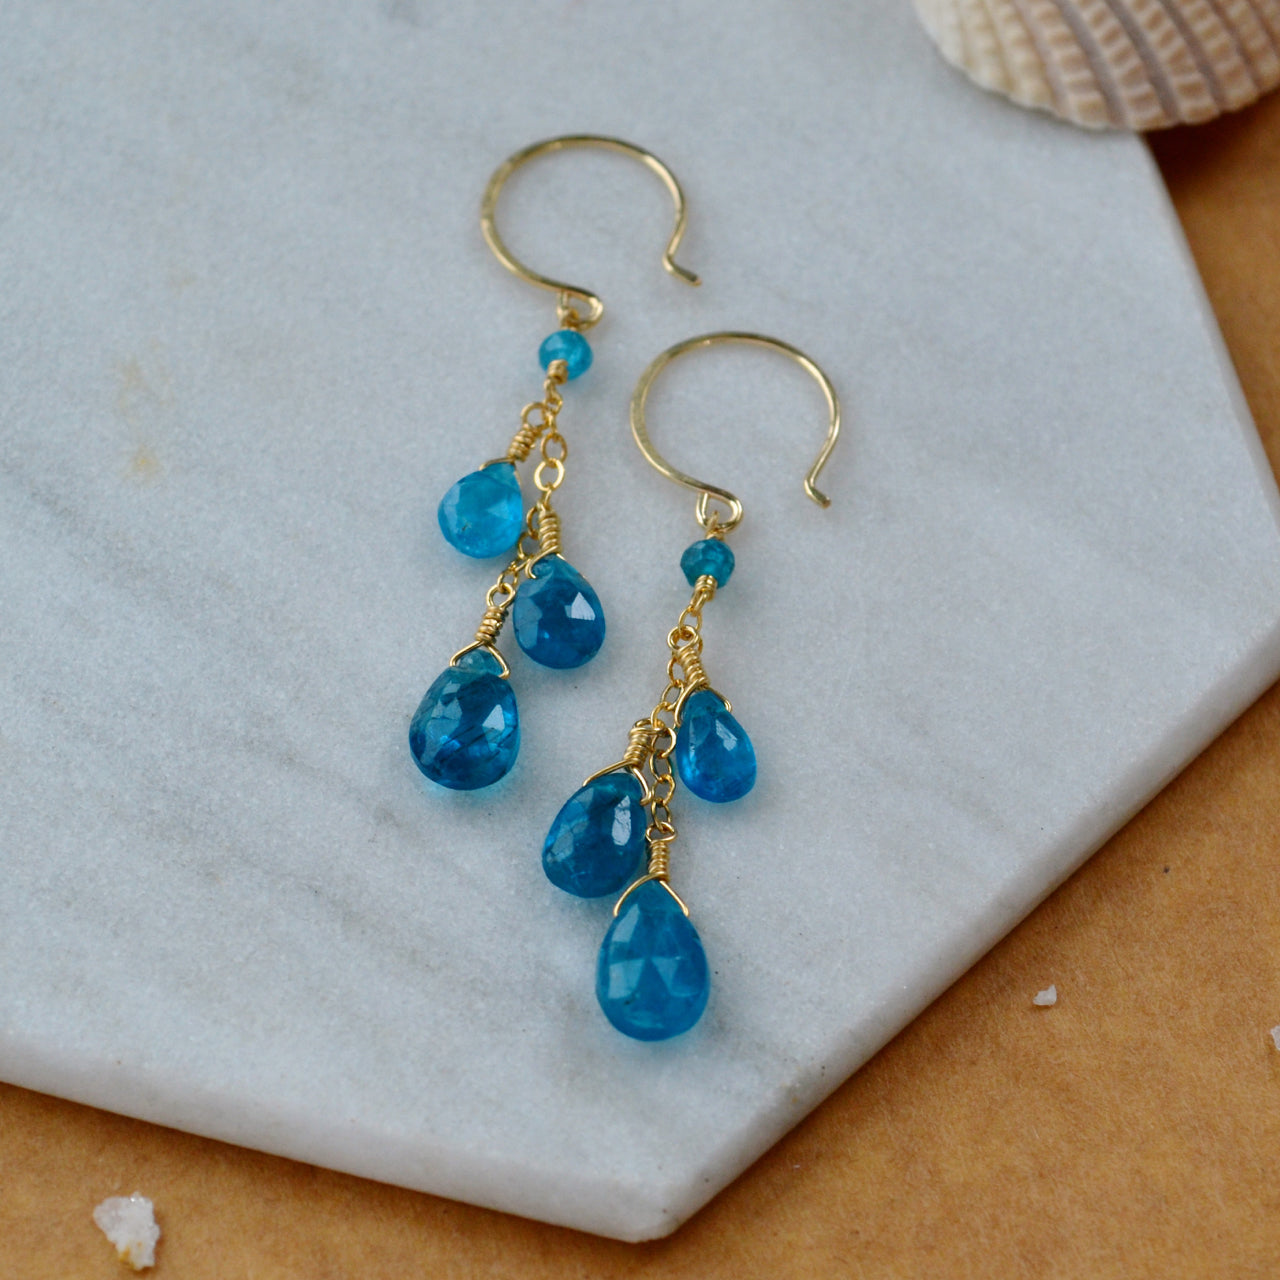 lagoon earrings blue apatite gemstone earring dangles neon blue long earrings gold filled